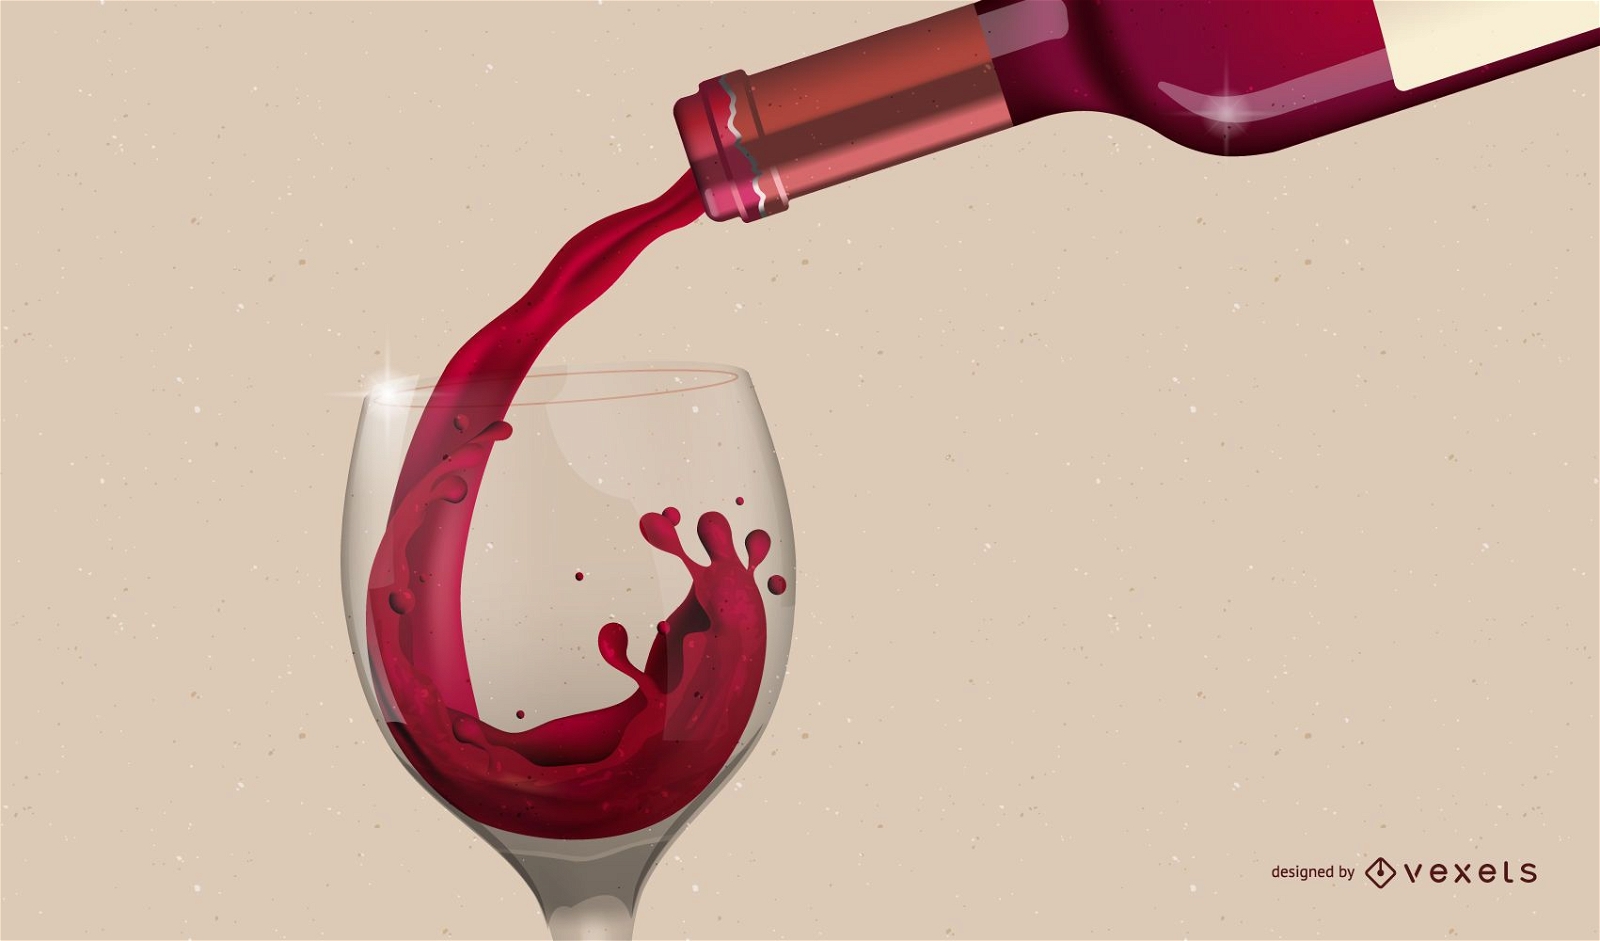 Verter el vino tinto en el vaso